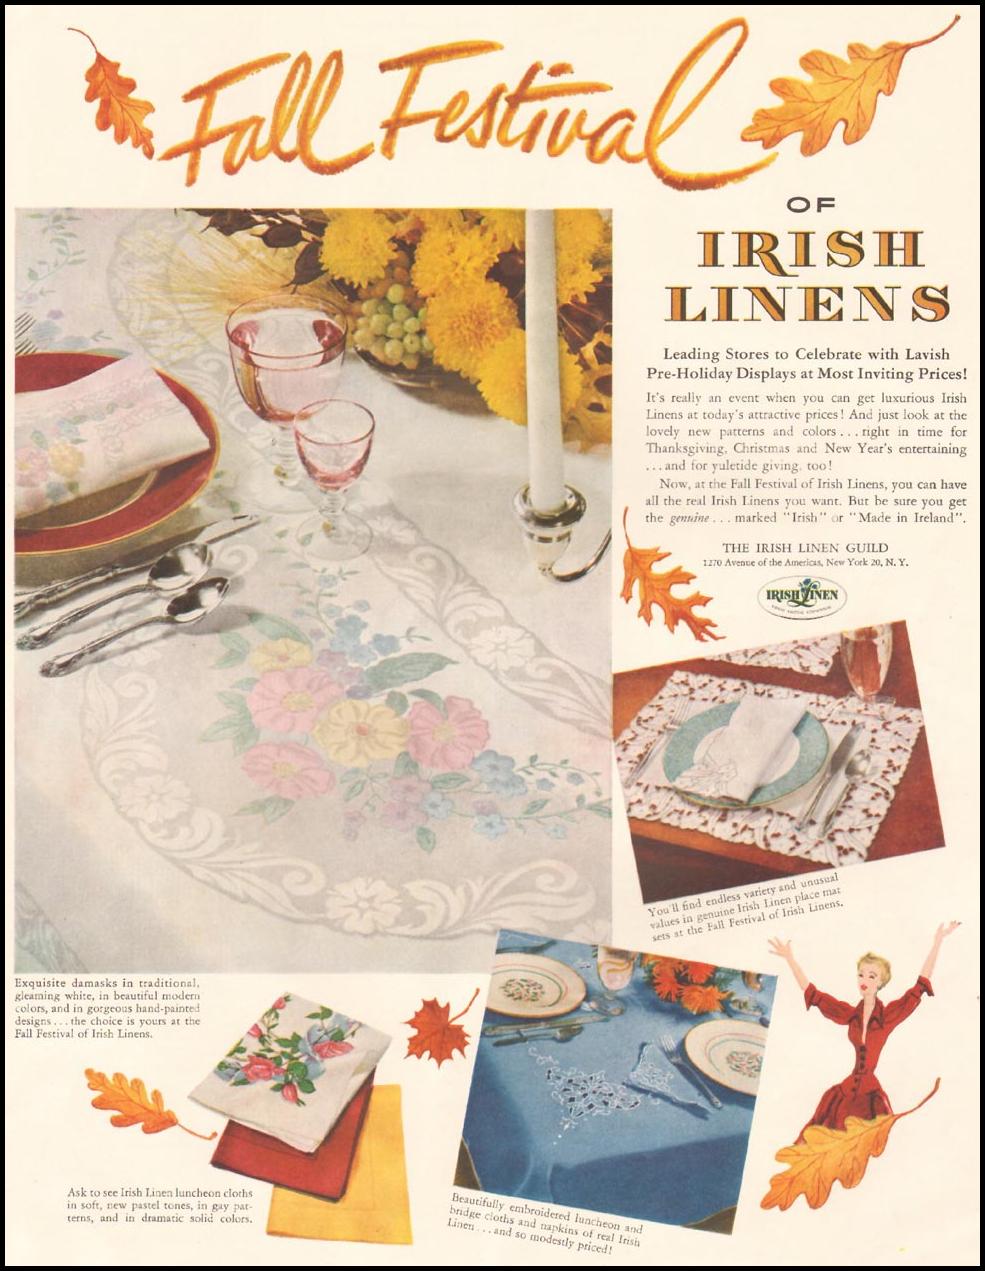 IRISH LINENS
LADIES' HOME JOURNAL
11/01/1950
p. 7